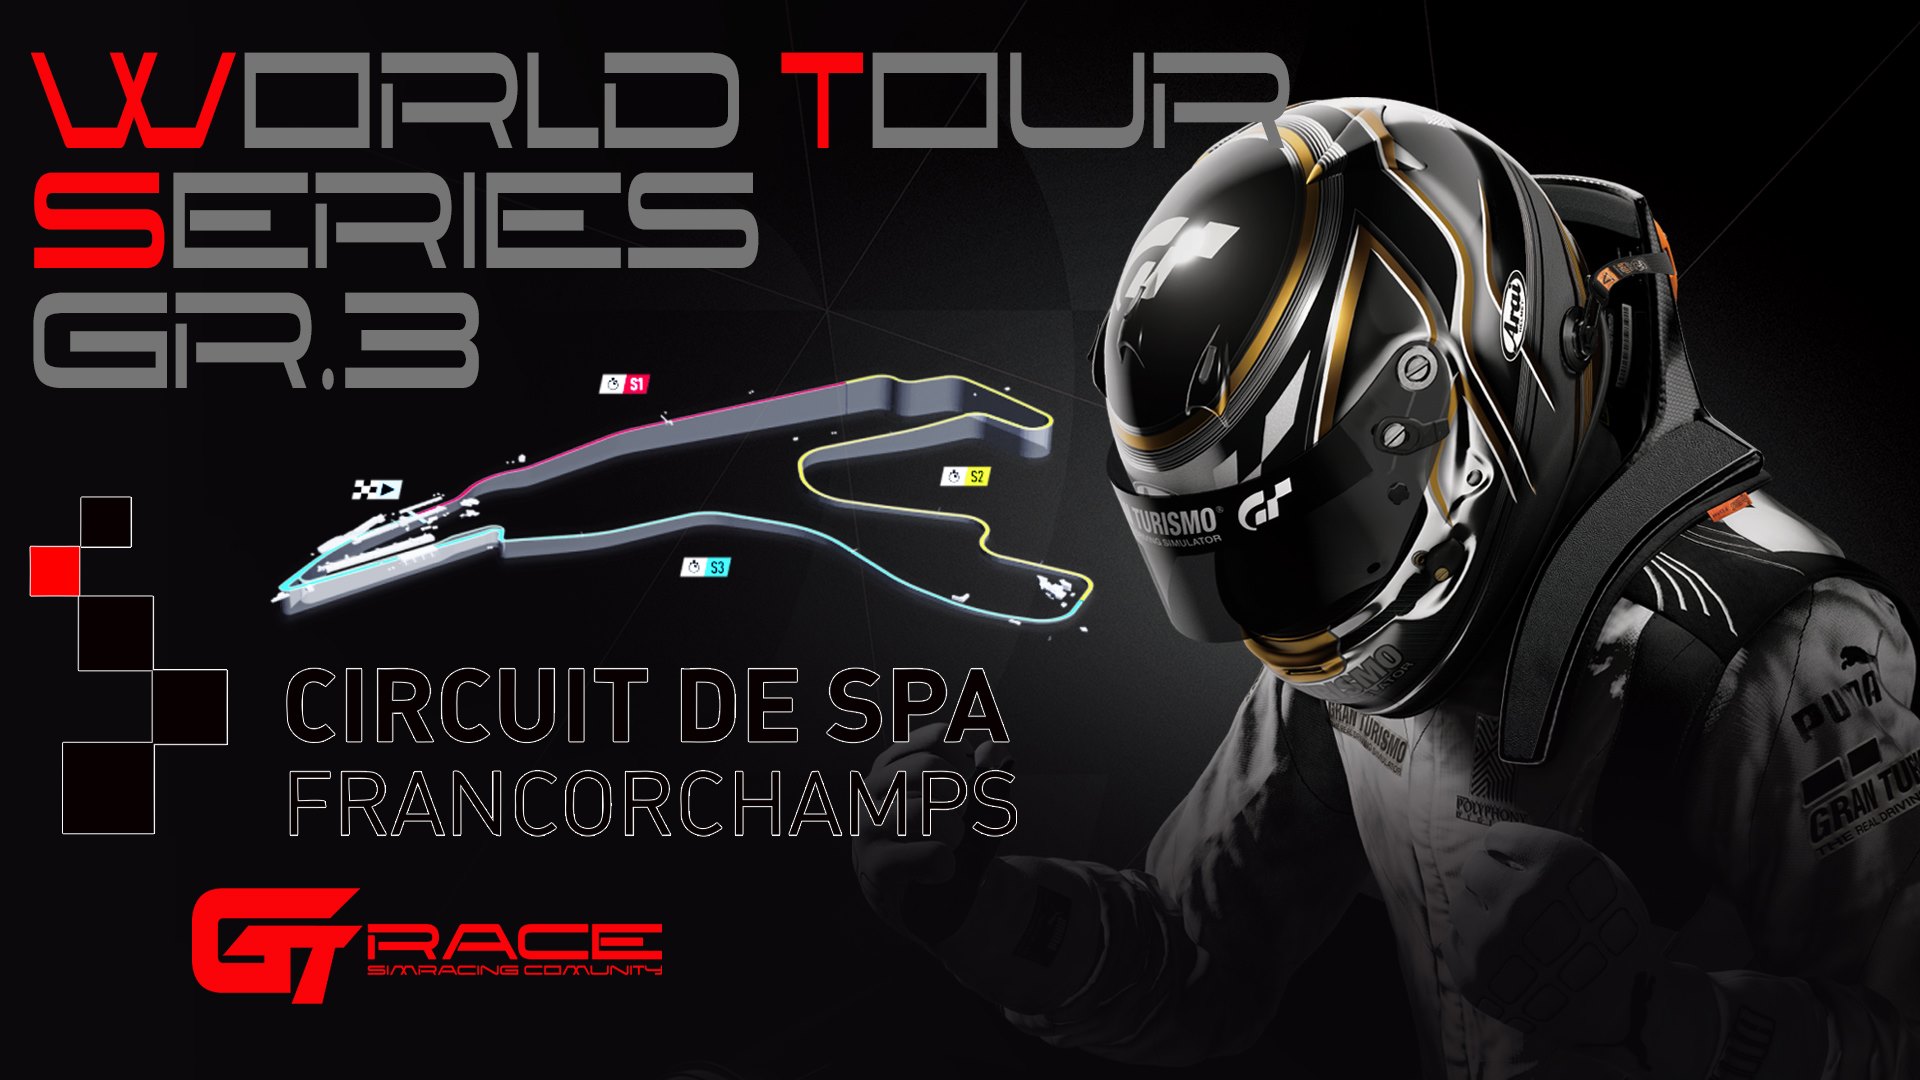 Circuit de SPA Francorchamps